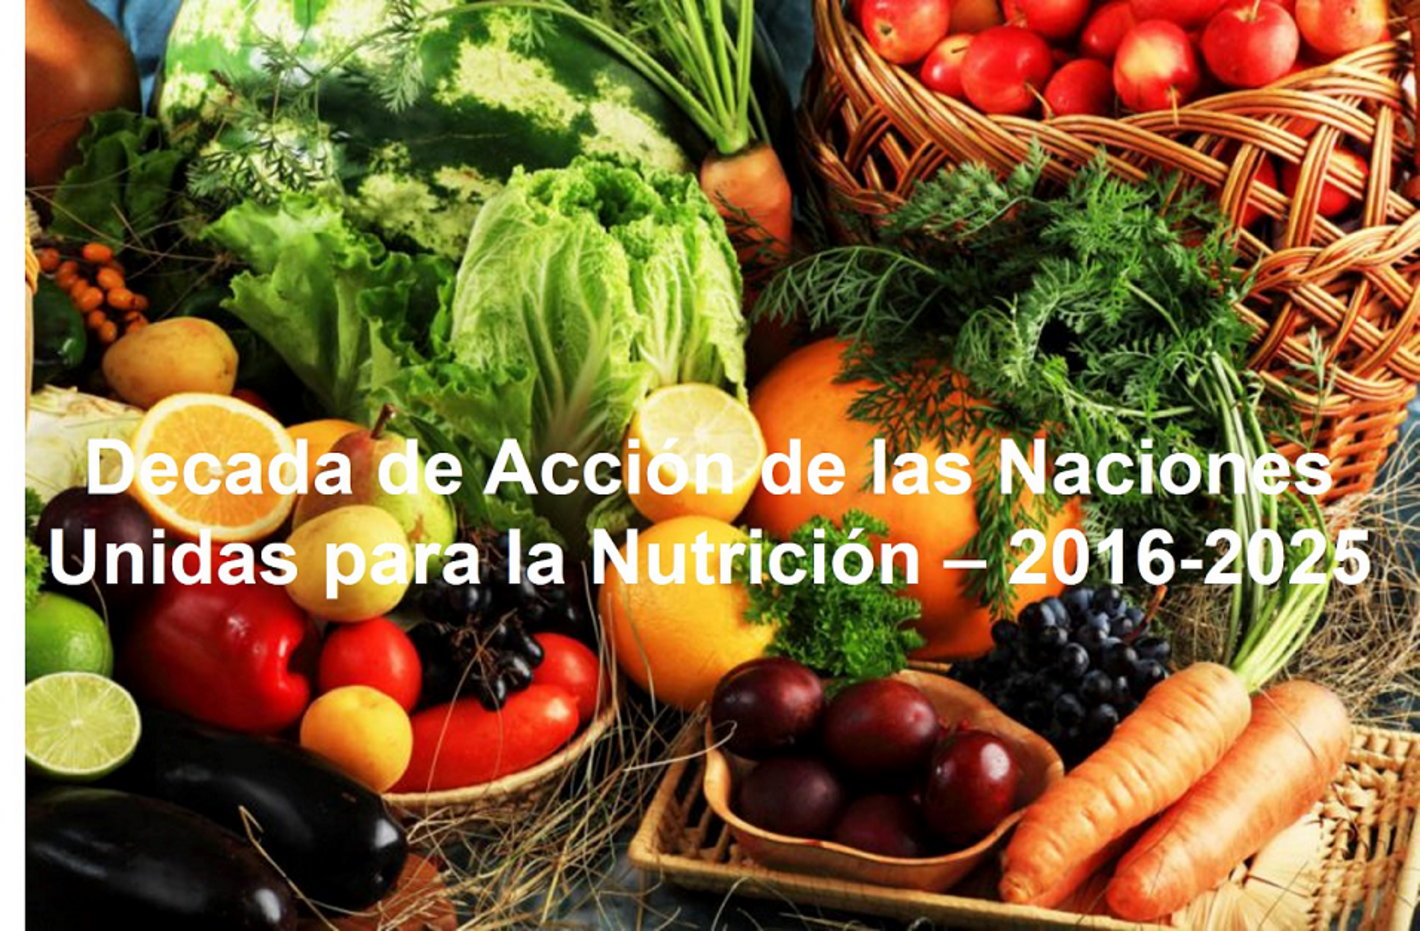 Decada de las Naciones Unidas para la Nutricion - 2016-2025